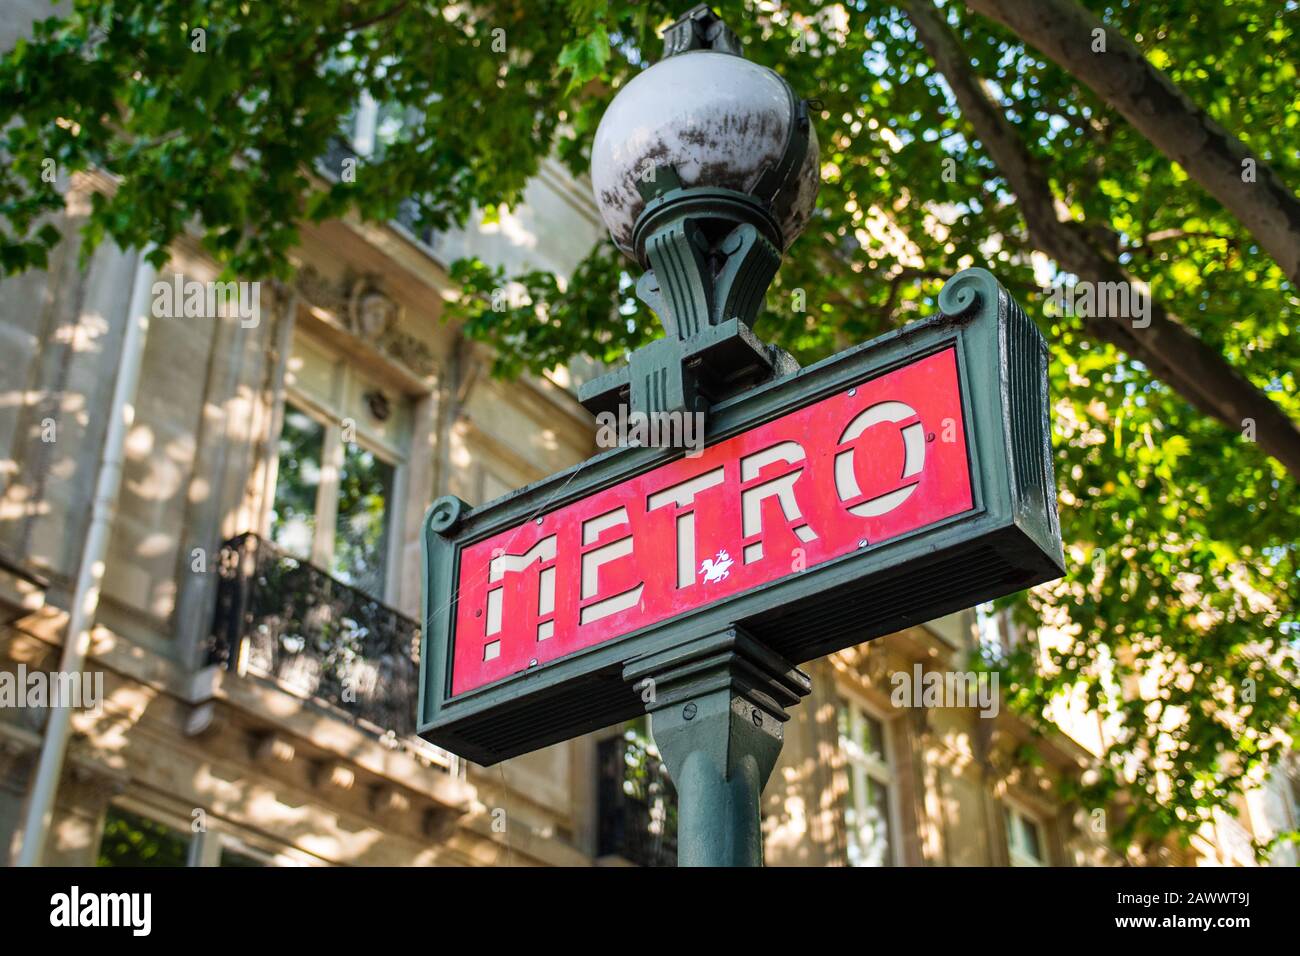 Schönes typisches rotes U-Bahn-Schild (Paris, Frankreich). Europäischer Stil, Aufnahmen im niedrigen Winkel mit verschwommenem Naturhintergrund. Straßenelement aus grünem Stahl Stockfoto